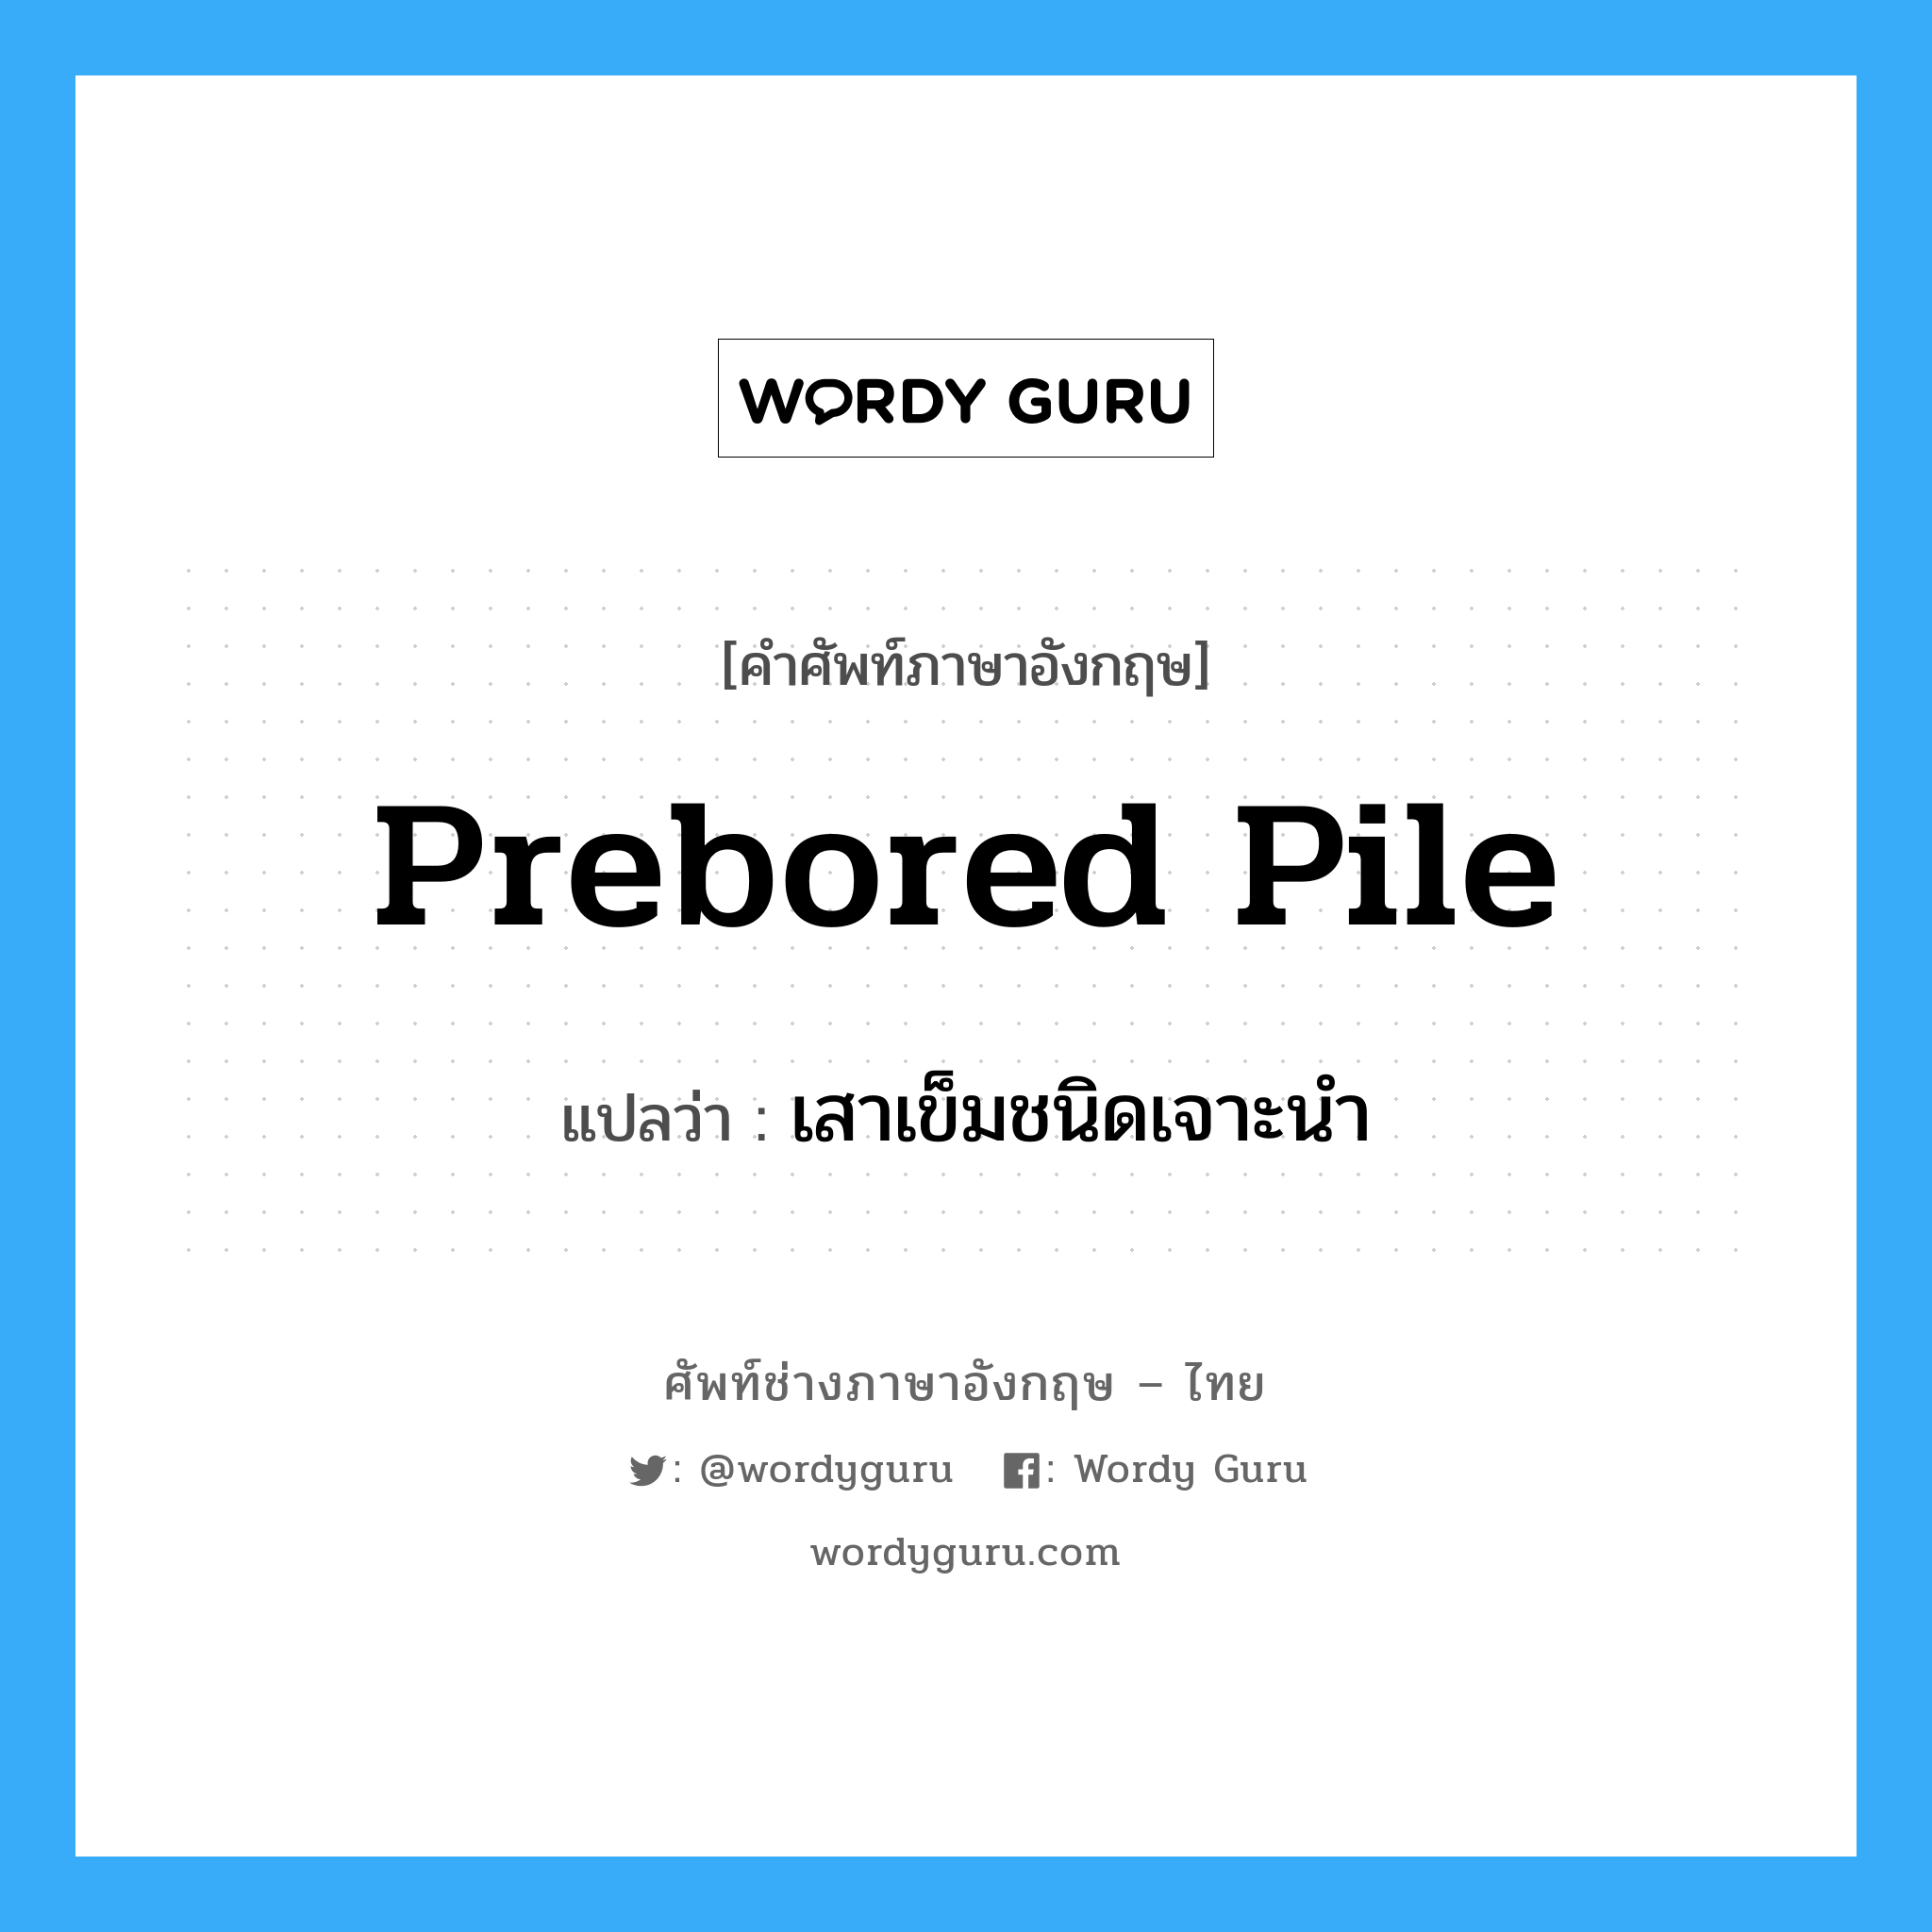 prebored pile แปลว่า?, คำศัพท์ช่างภาษาอังกฤษ - ไทย prebored pile คำศัพท์ภาษาอังกฤษ prebored pile แปลว่า เสาเข็มชนิดเจาะนำ